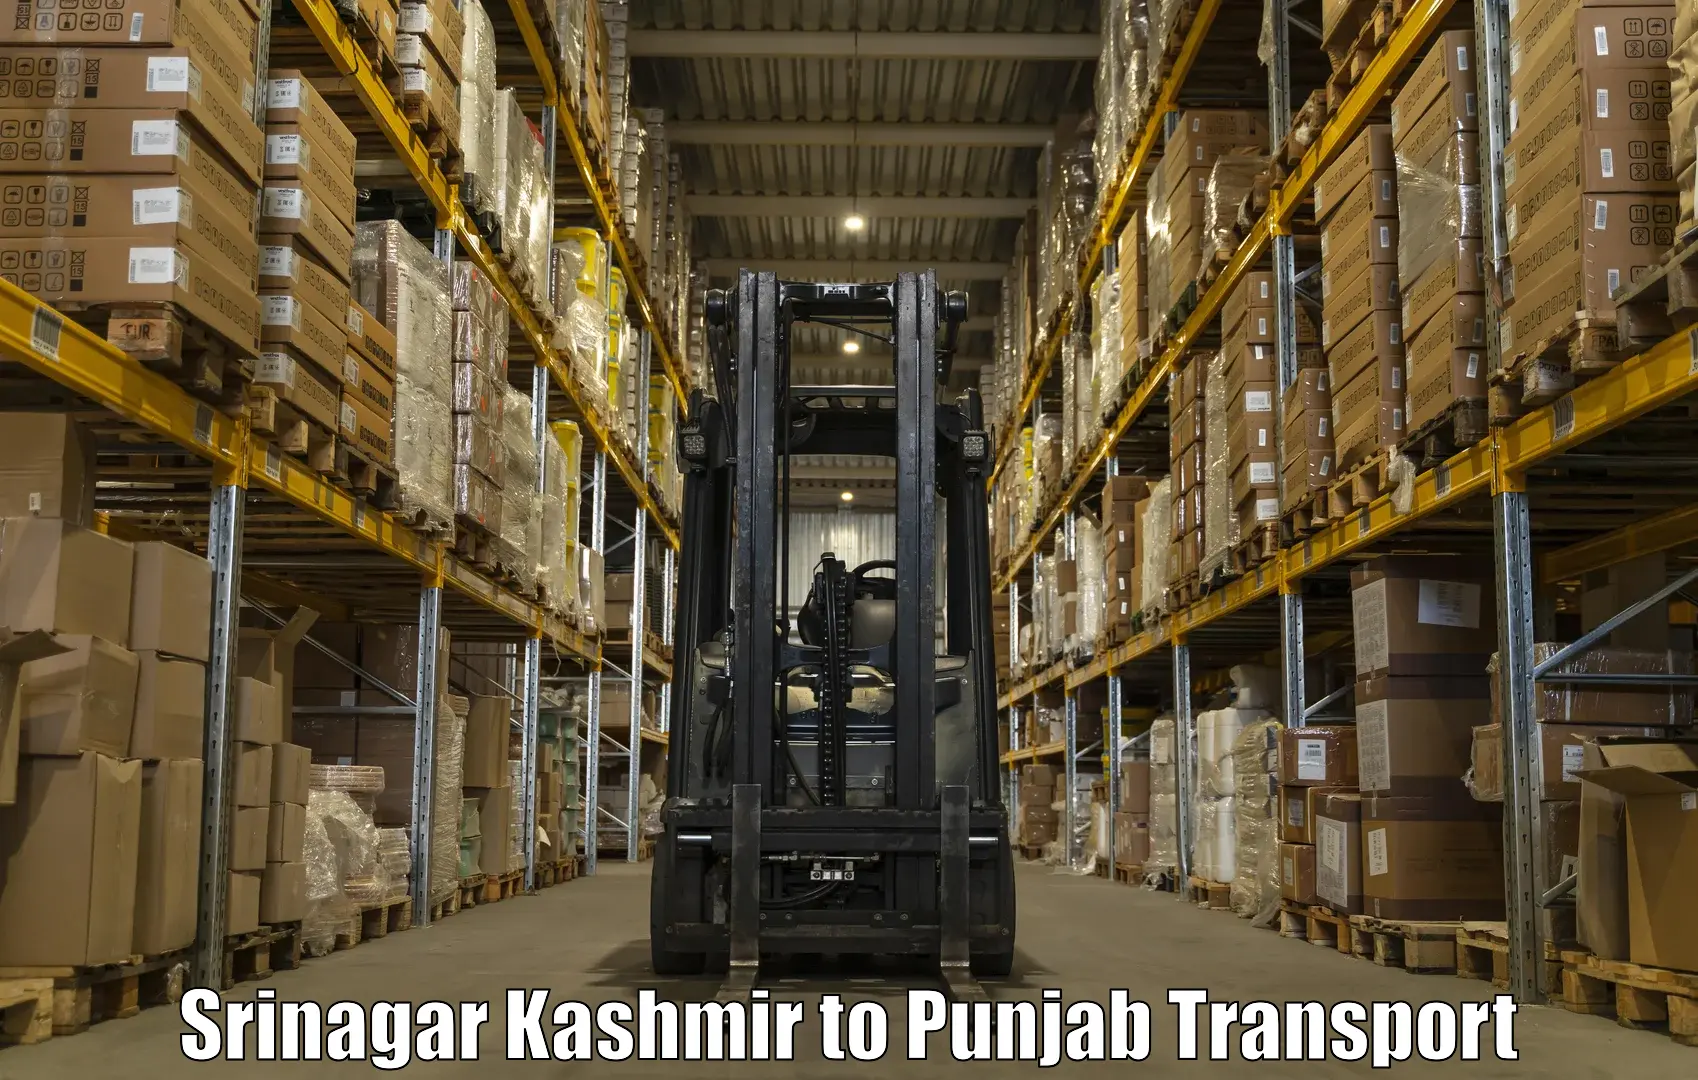 Bike shipping service Srinagar Kashmir to Pathankot